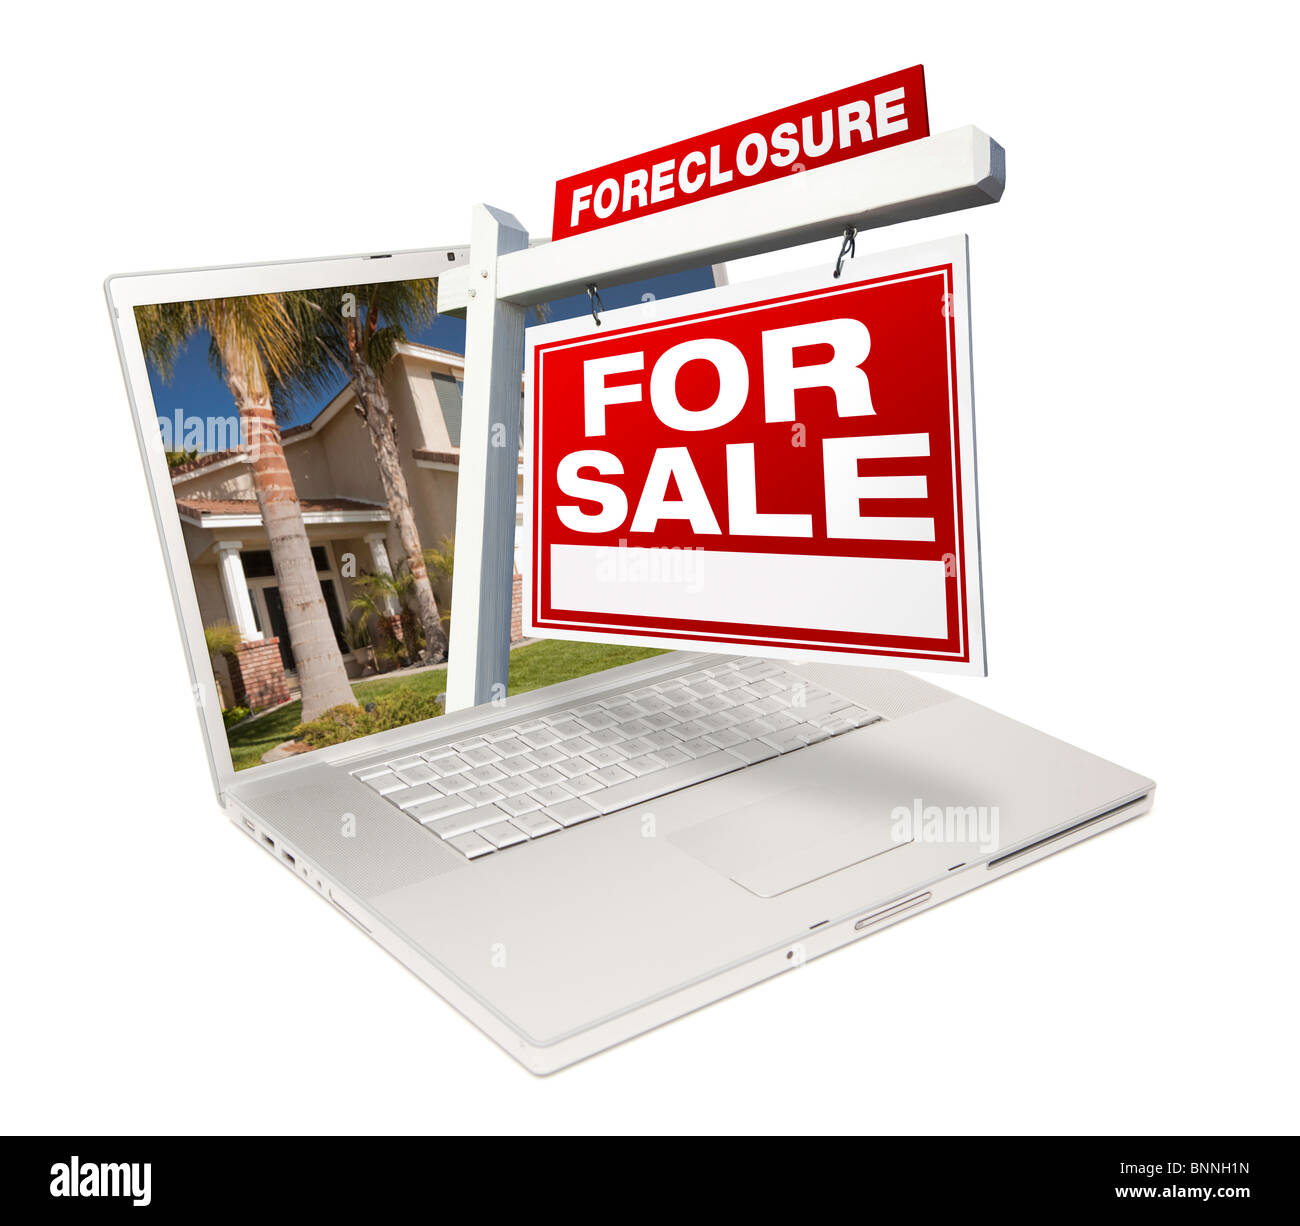 Casa di preclusione per la vendita immobiliare di segno & Laptop isolato su uno sfondo bianco. Foto Stock